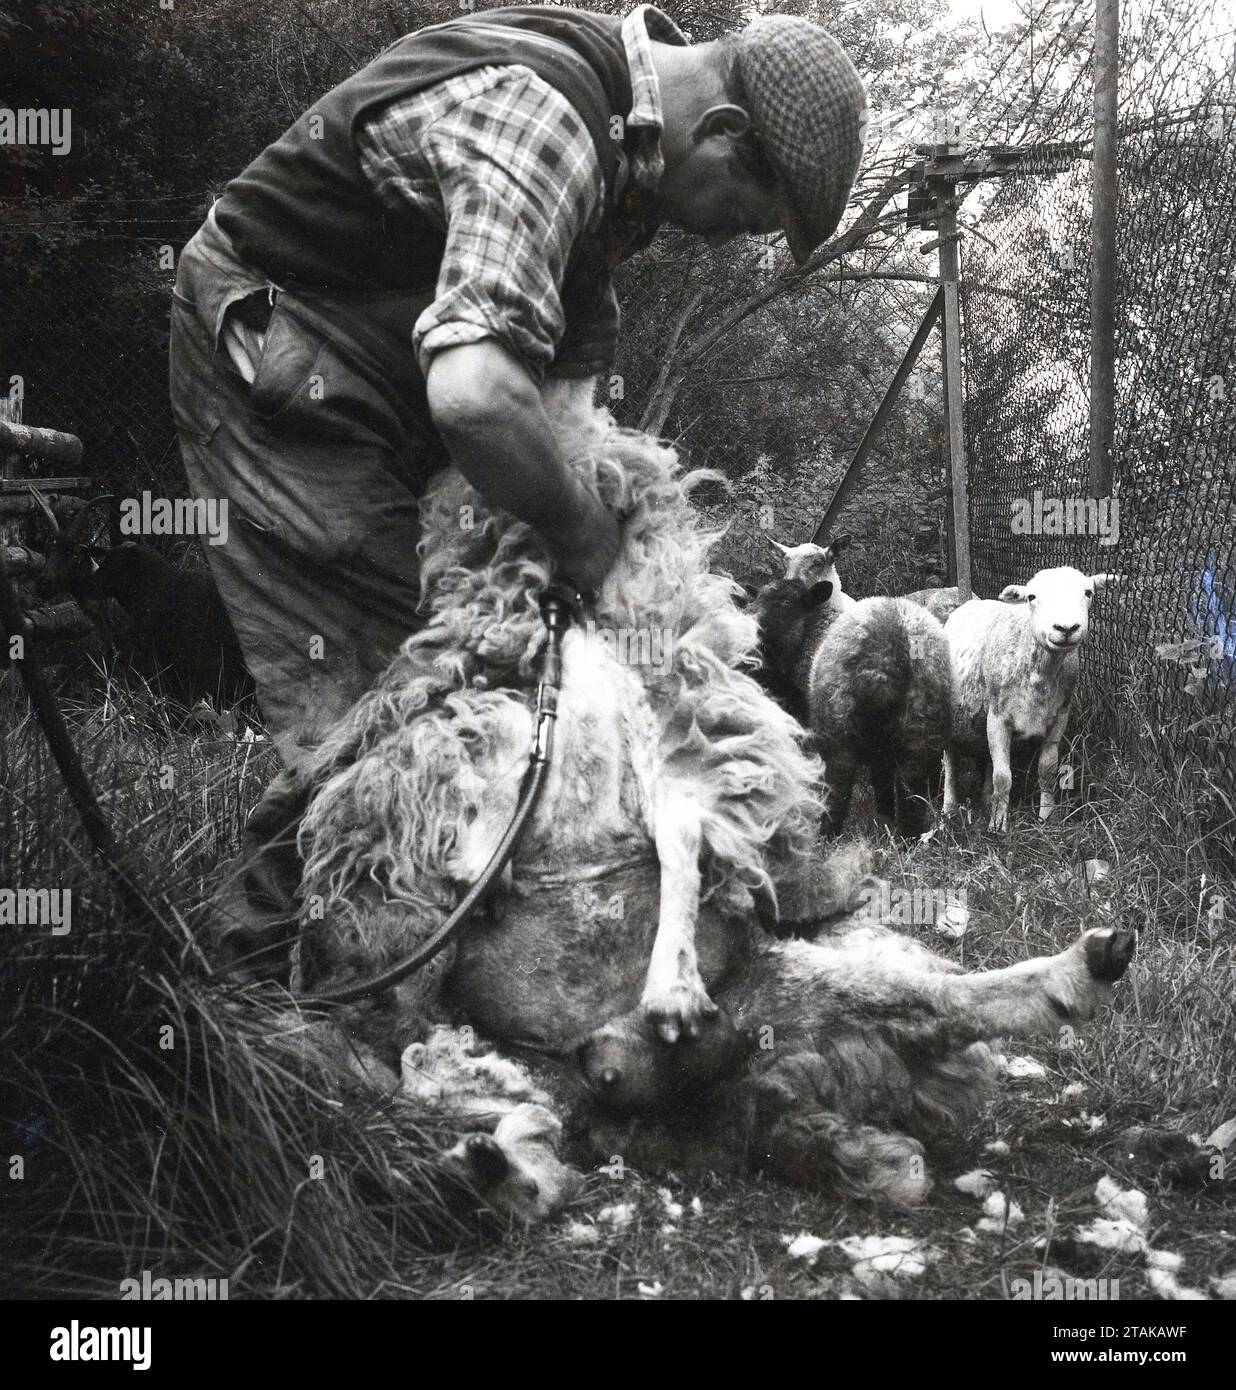 1960er Jahre, historisch, Scheren eines Schafes, England, Großbritannien. Ein Schergerät bei der Arbeit, das ein Schaf mit einer maschinellen Vorrichtung abnimmt, um das geschwollene Vlies von einem Schaf zu entfernen, normalerweise einmal im Jahr, damit die Schafe in den Sommermonaten kühler werden können. Das Handstück der Maschine zum Entfernen der Wolle ähnelt einem Haarschneider, der in einem Friseur verwendet wird Vor Maschinenscheren wurden Scheren verwendet. Stockfoto